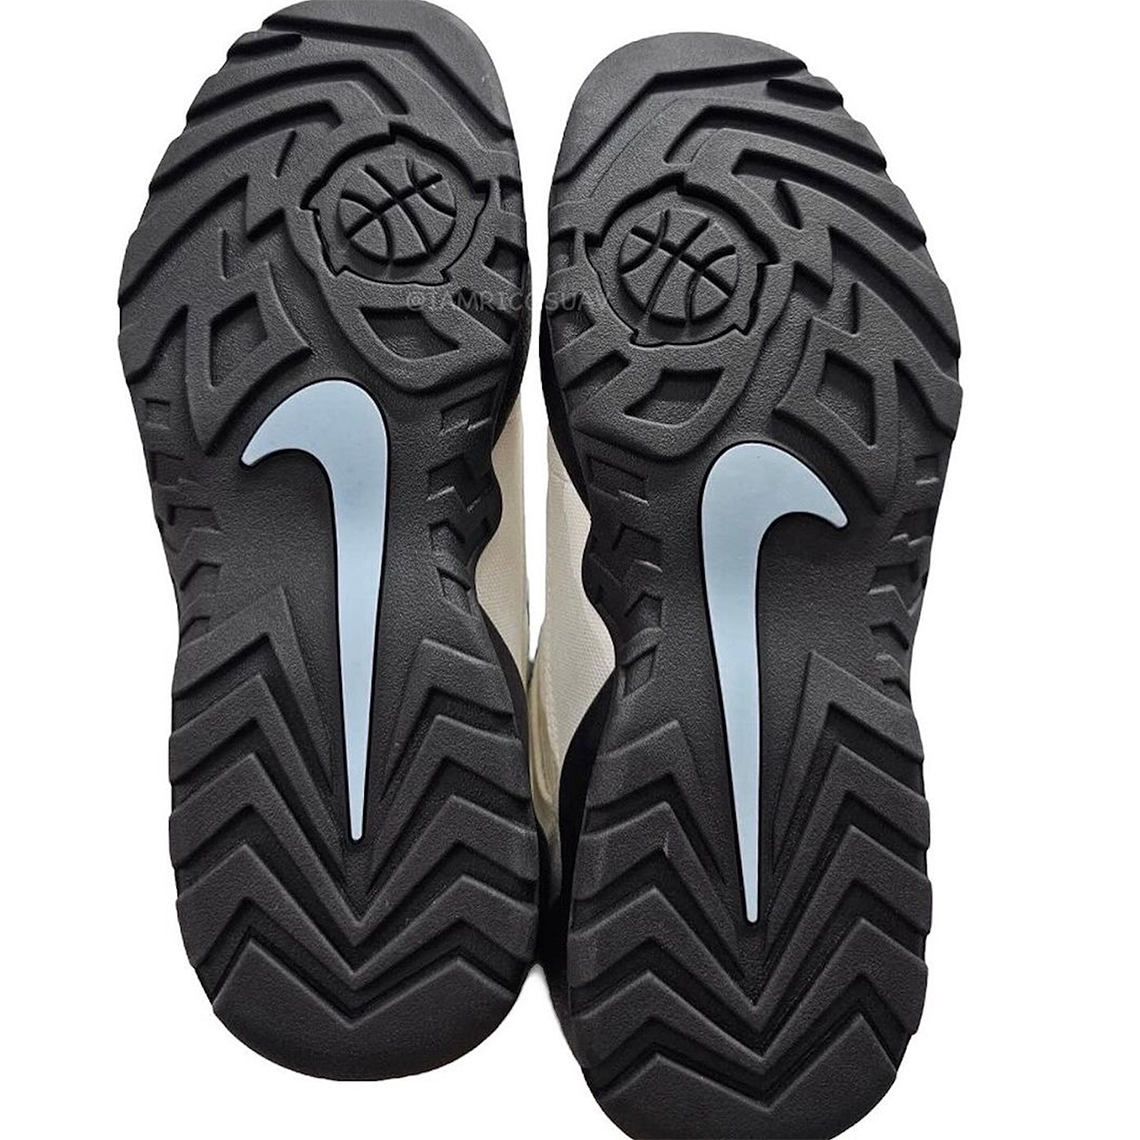 Supreme x Nike SB Air Darwin Low Jordan Brand Rumor